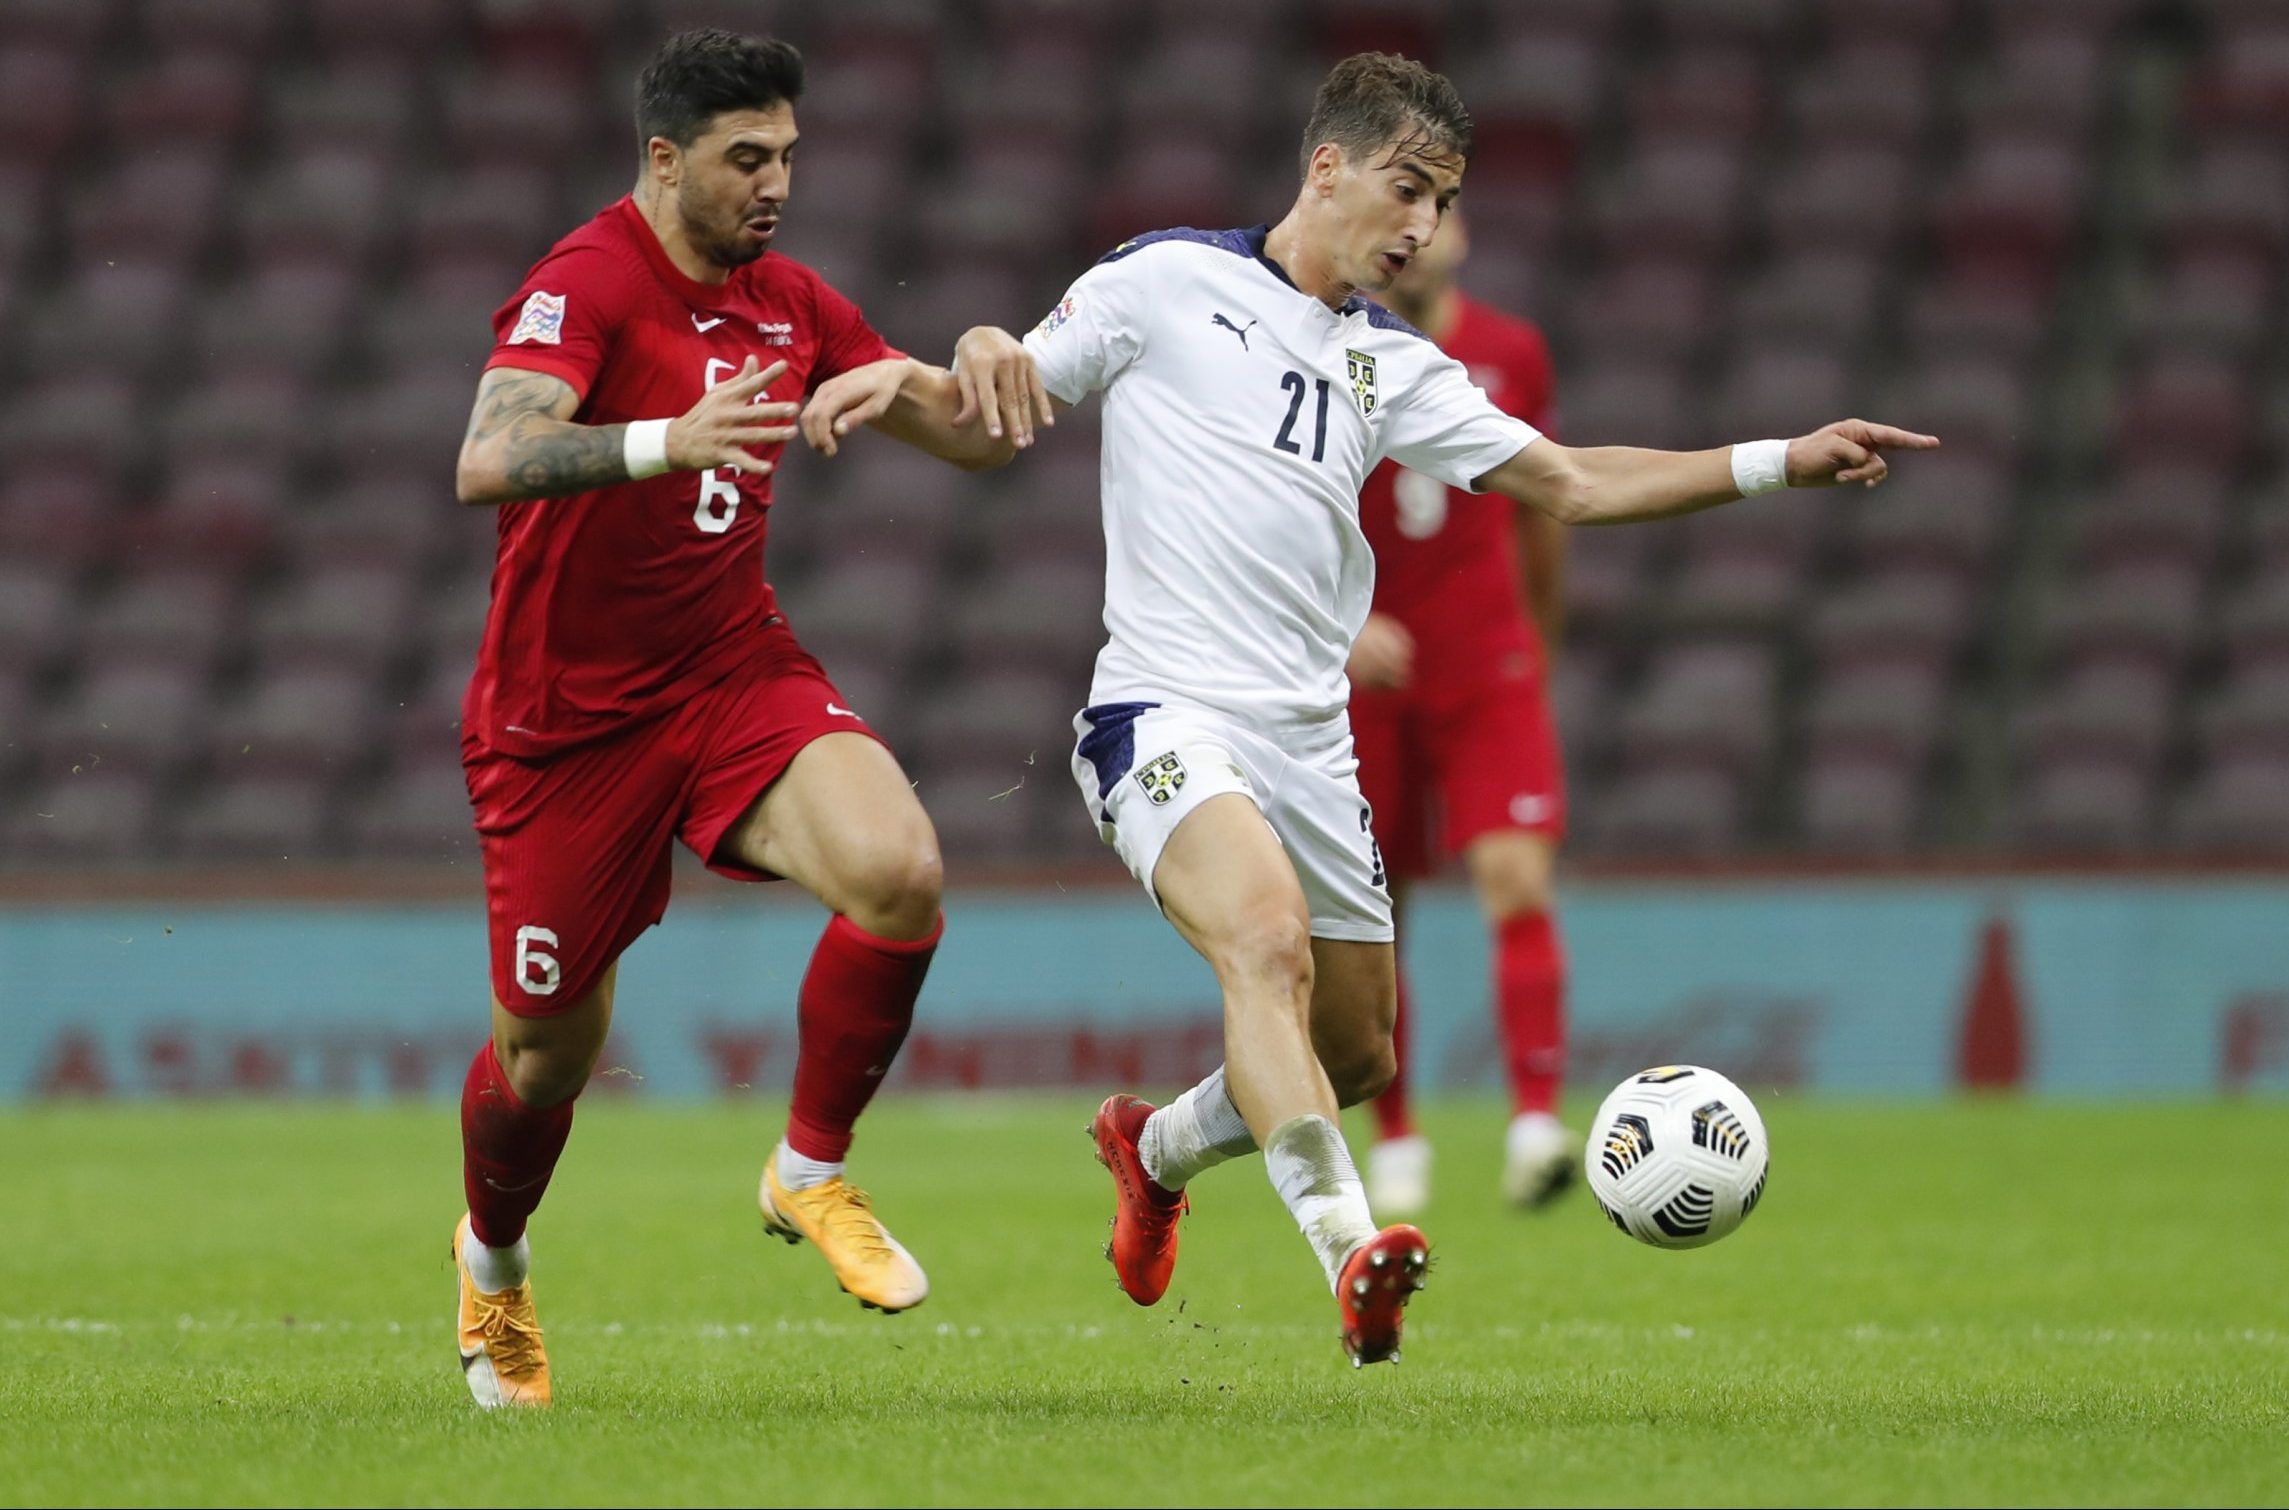 serbia midfielder filip djuricic in action against turkey